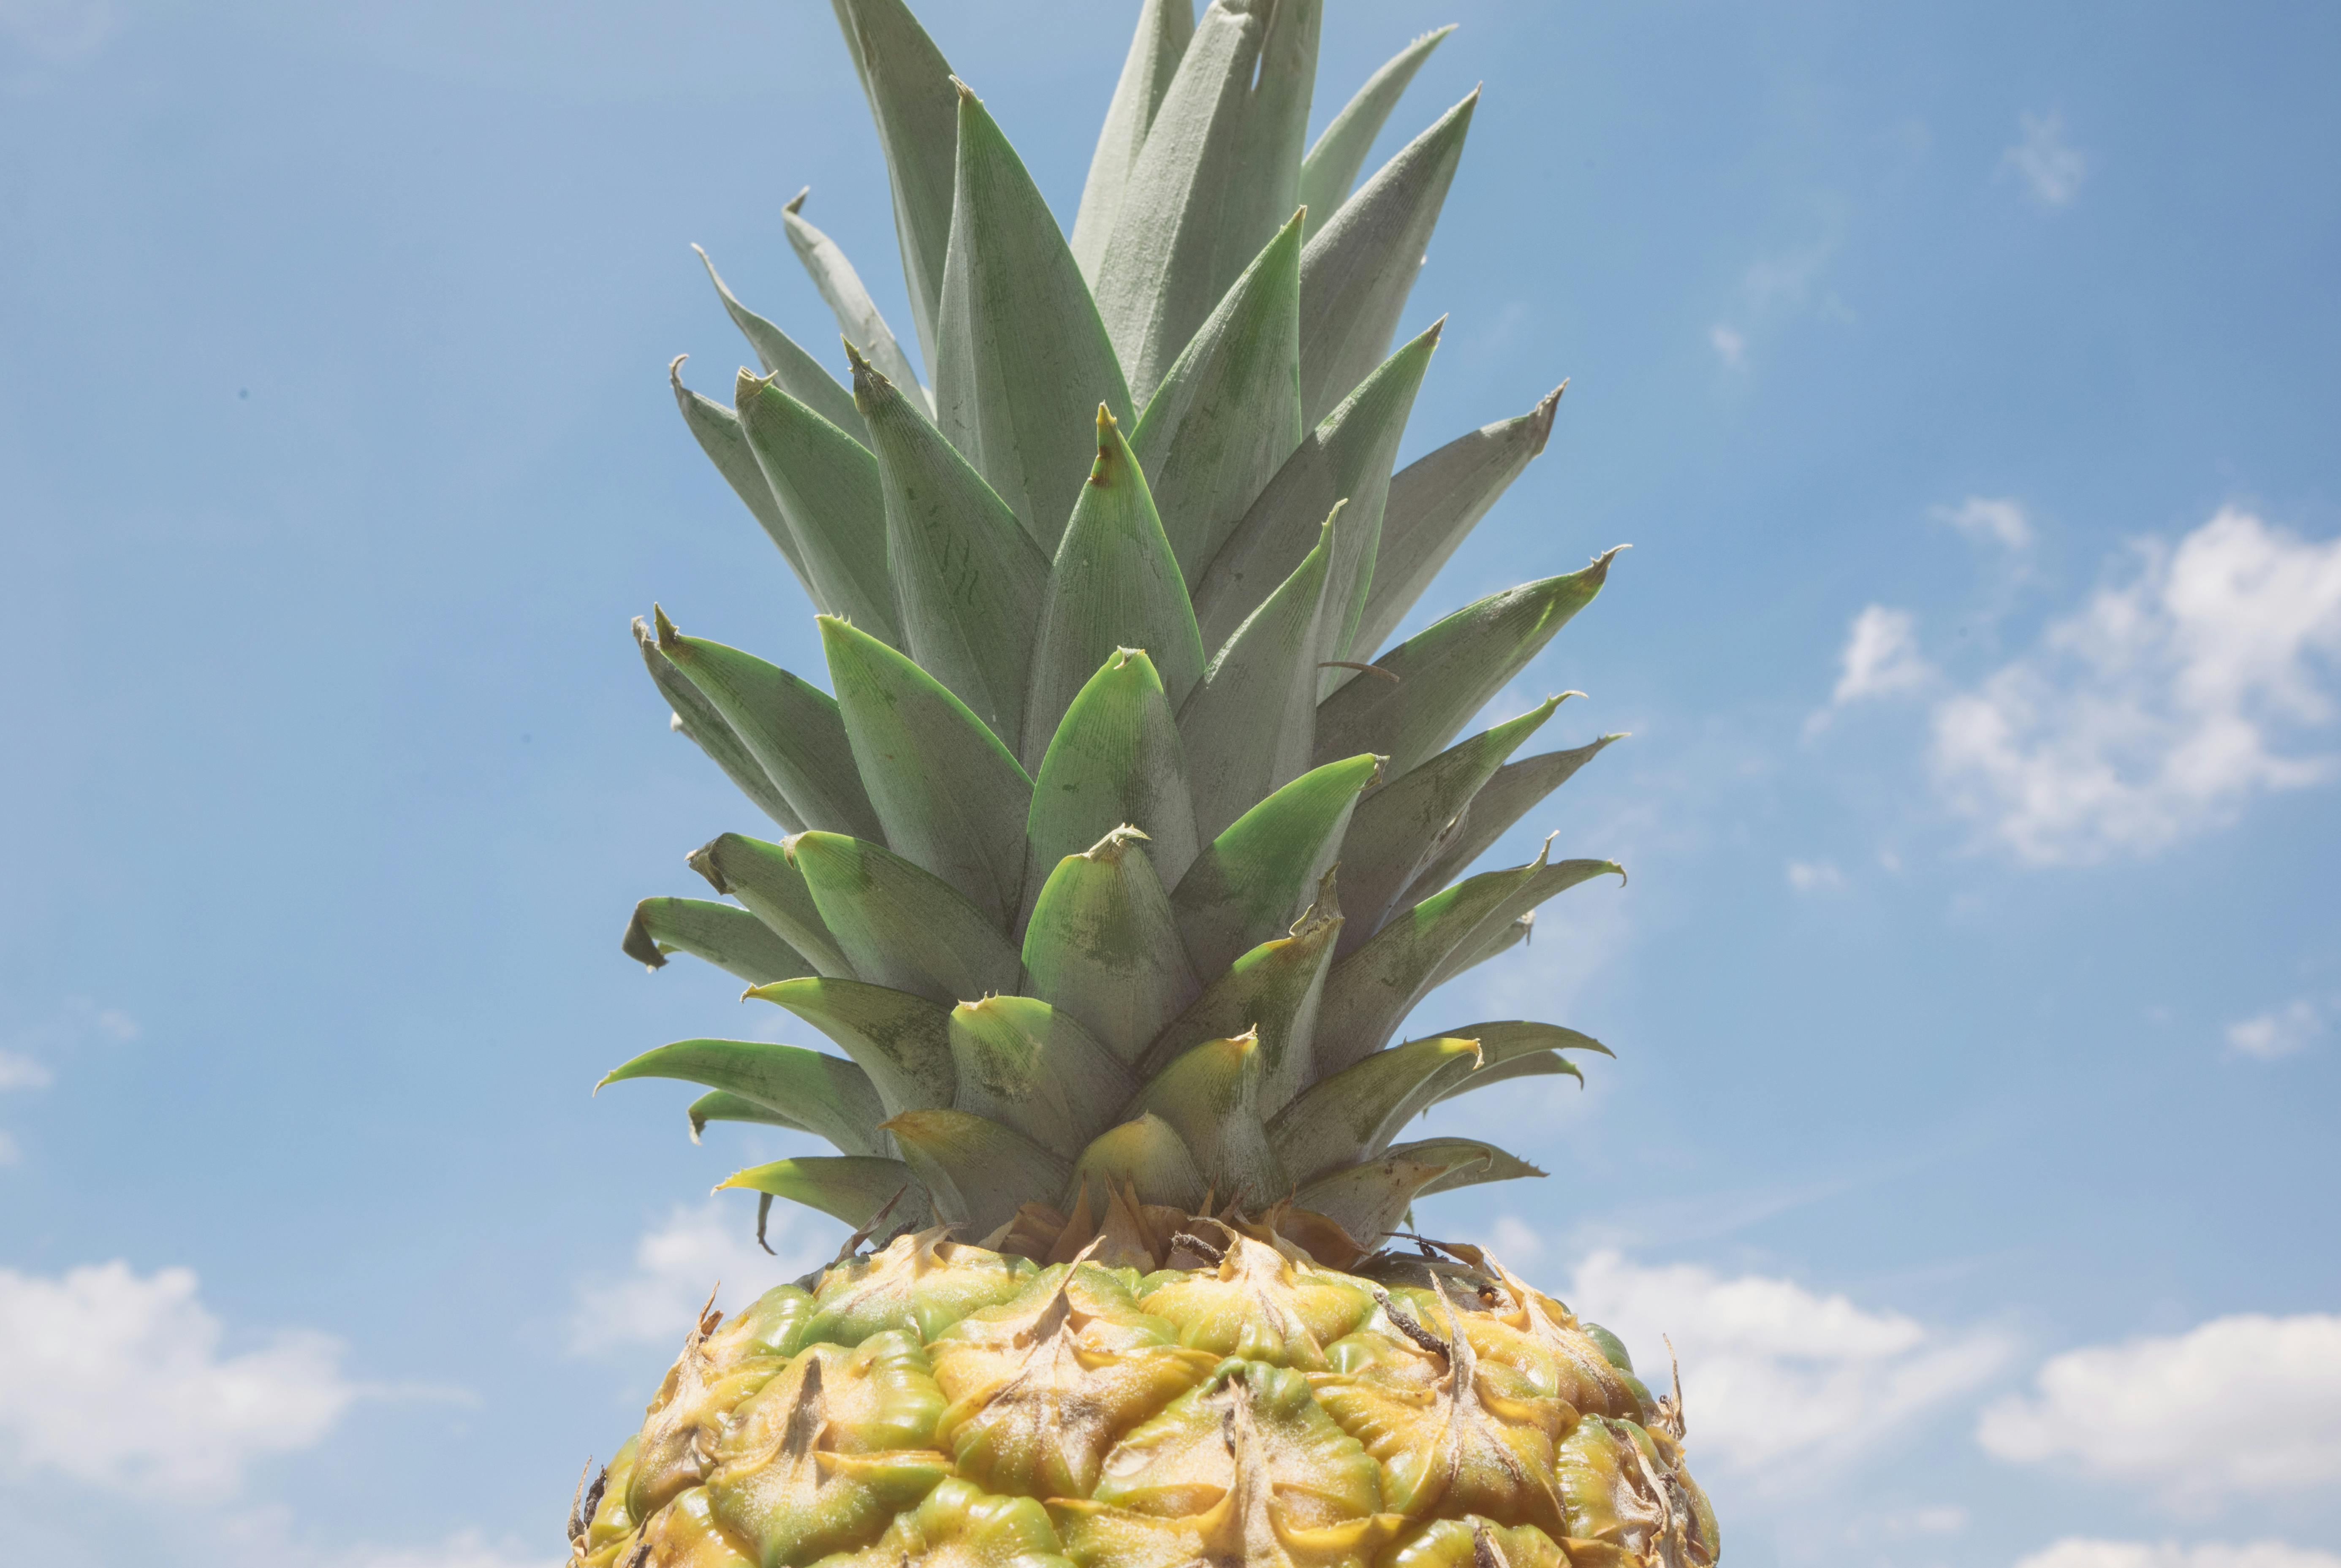 Kostenloses Foto zum Thema: ananas, blauer himmel, frucht